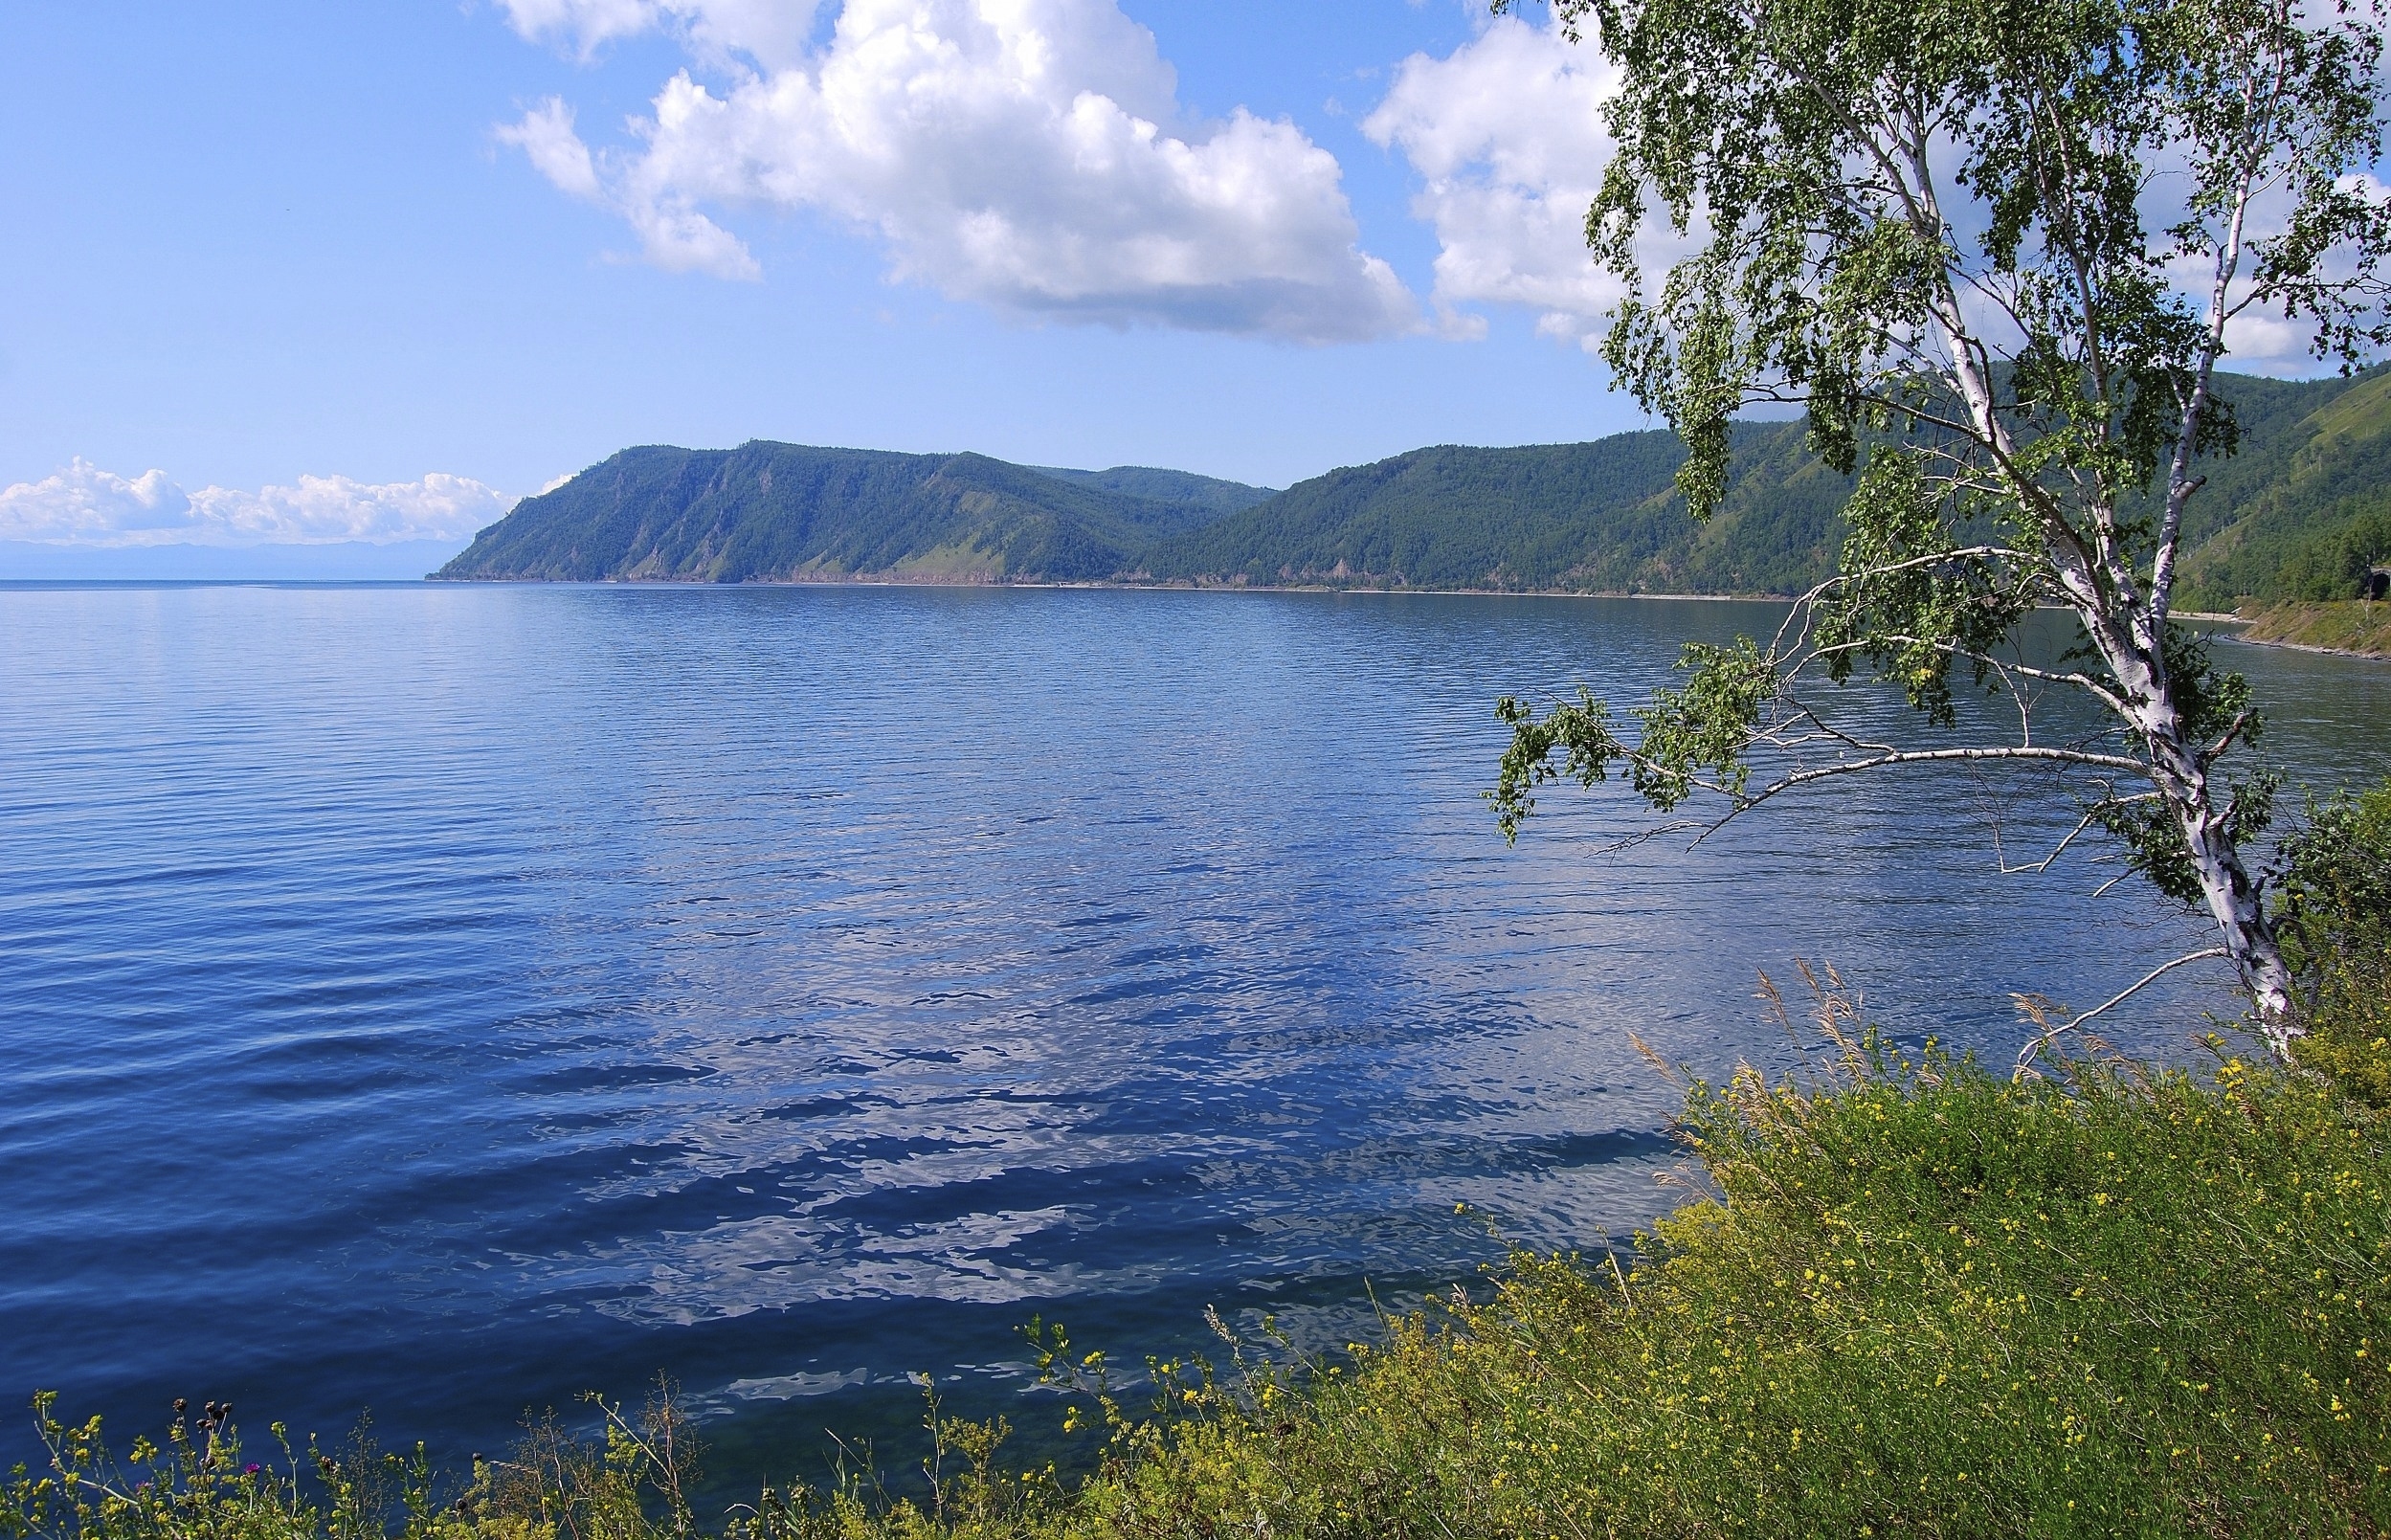 Природа Башкортостана Стерлитамак фото картина озеро Байкал